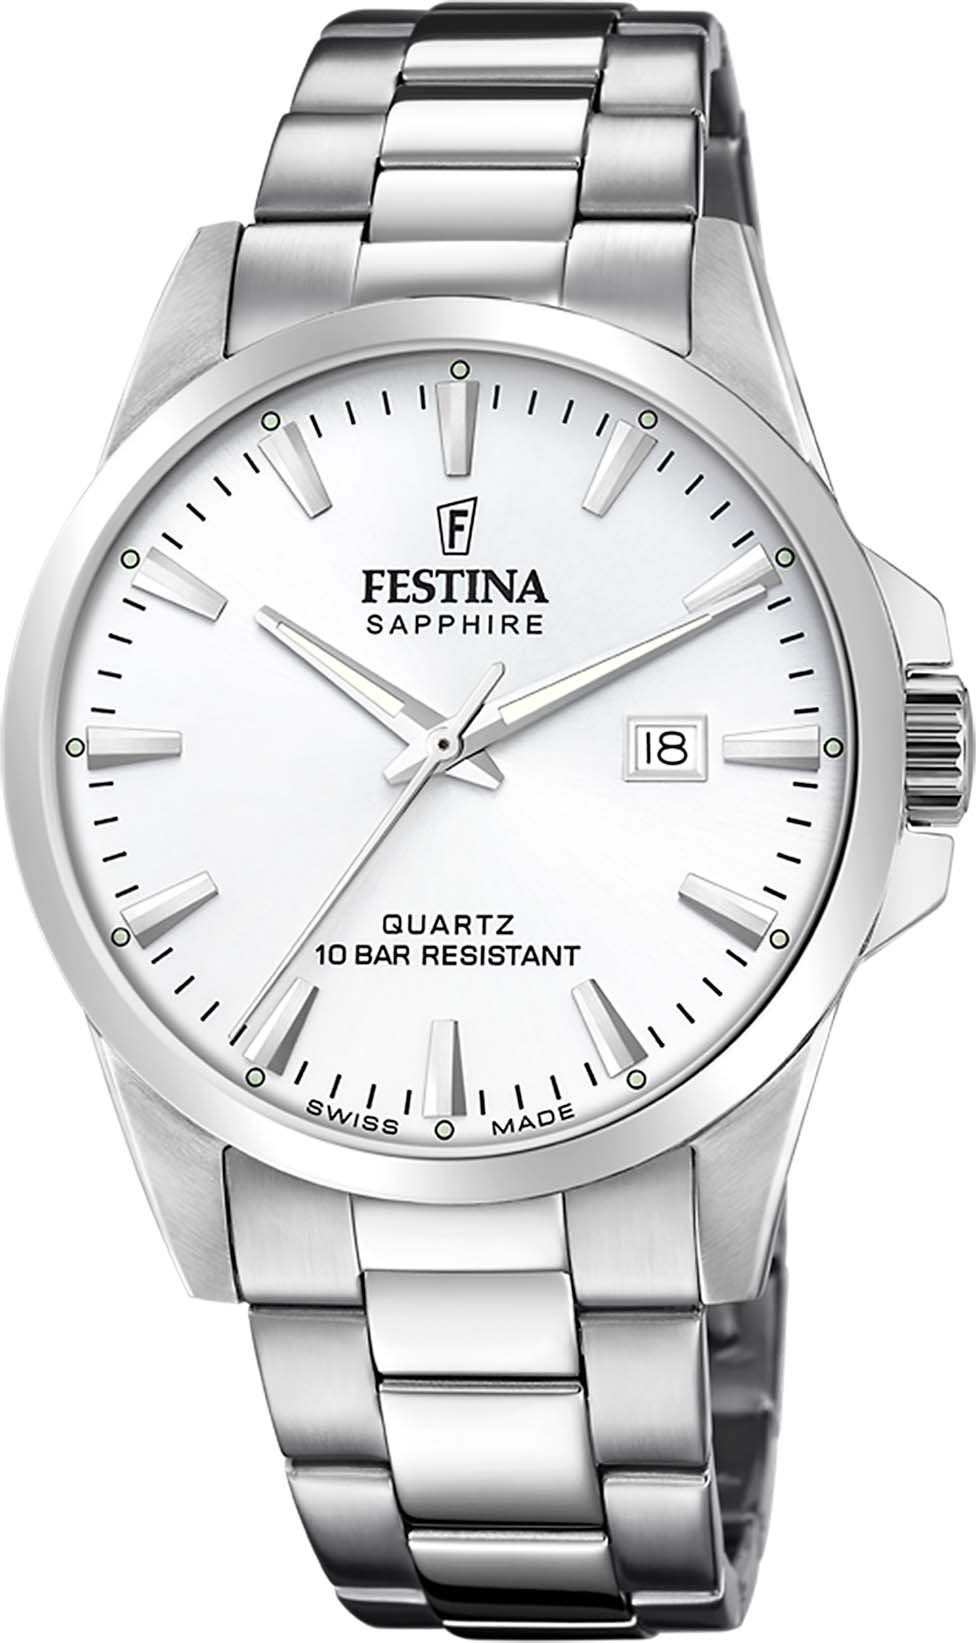 Festina F20024/2 Made, Schweizer Uhr Swiss